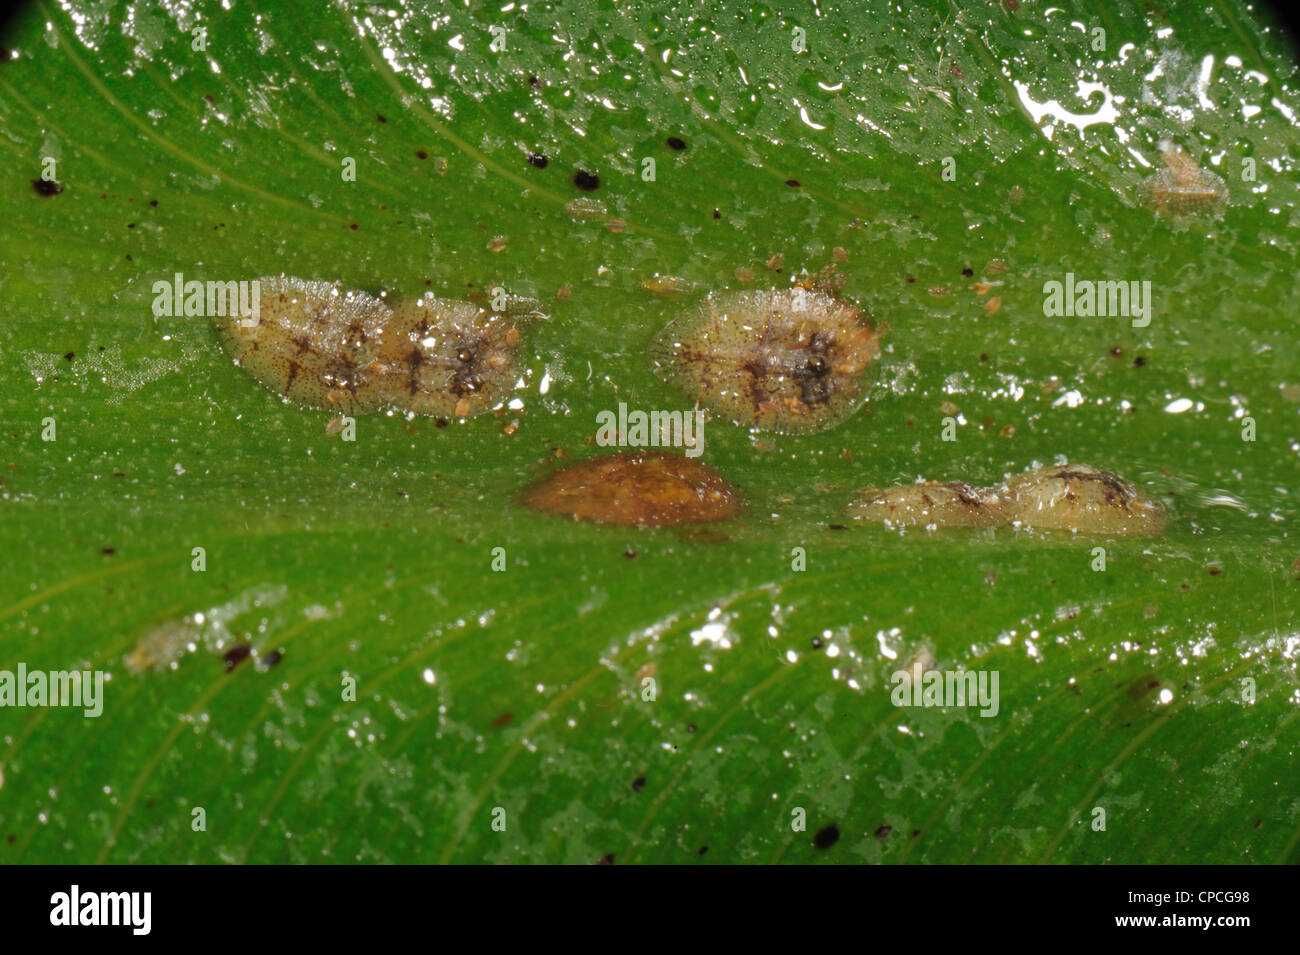 Honeydew & soft marrone insetti scala (Coccus hesperidum) su una foglia di banano vena controfiletto Foto Stock